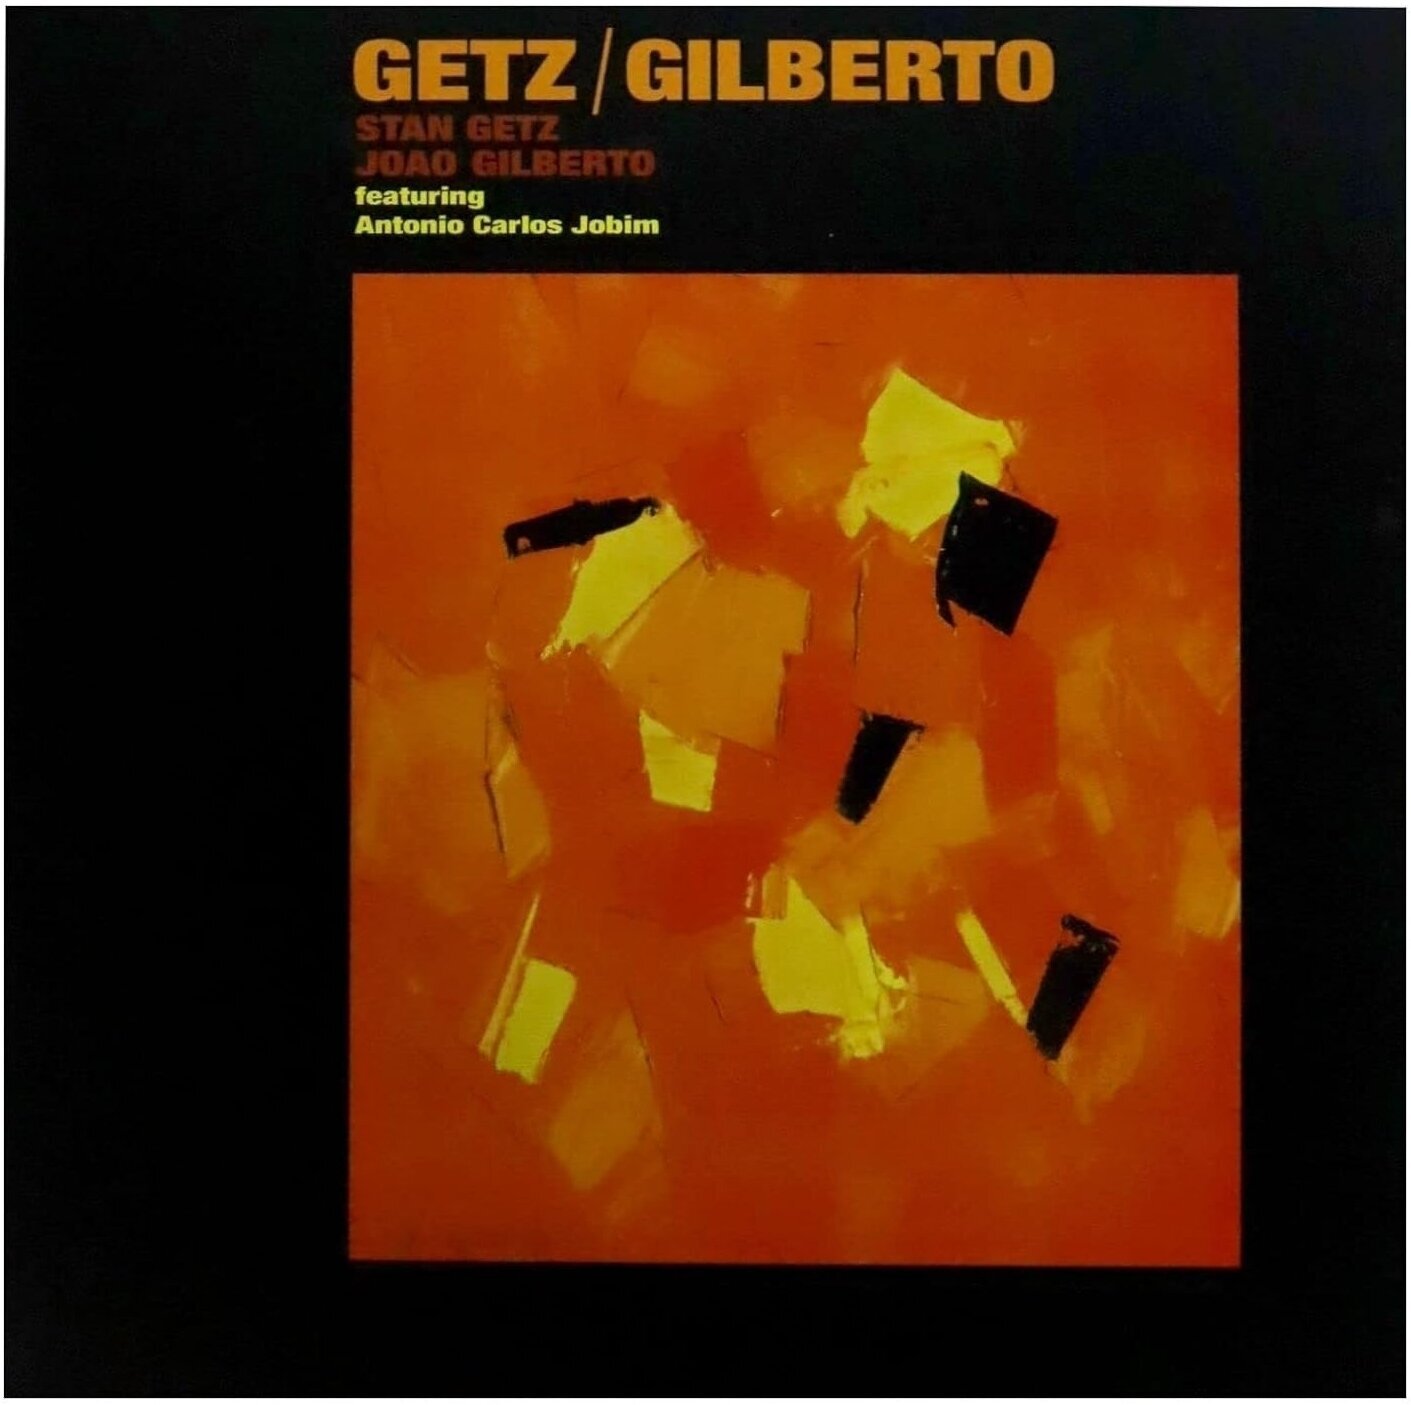 Joao Gilberto - Getz / Gilberto (Reissue) (Clear/Orange Splatter Coloured) (LP) Joao Gilberto